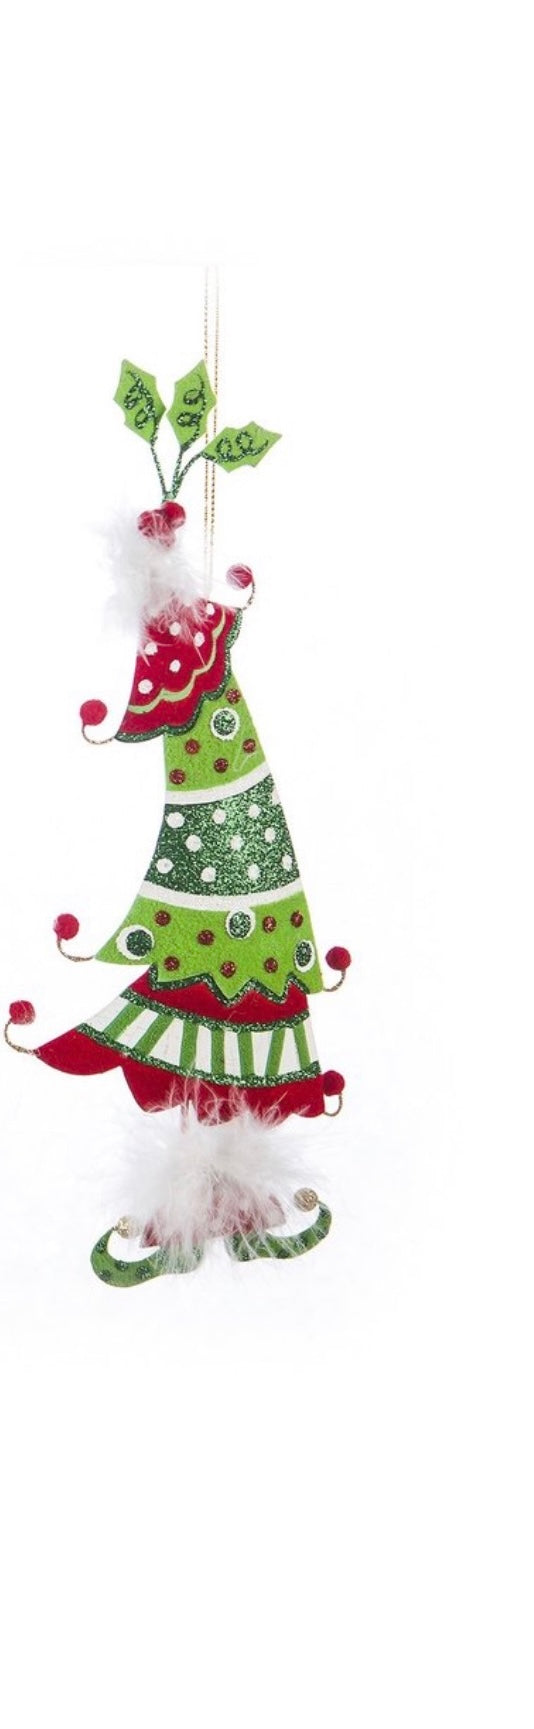 Kringles Tree Ornament